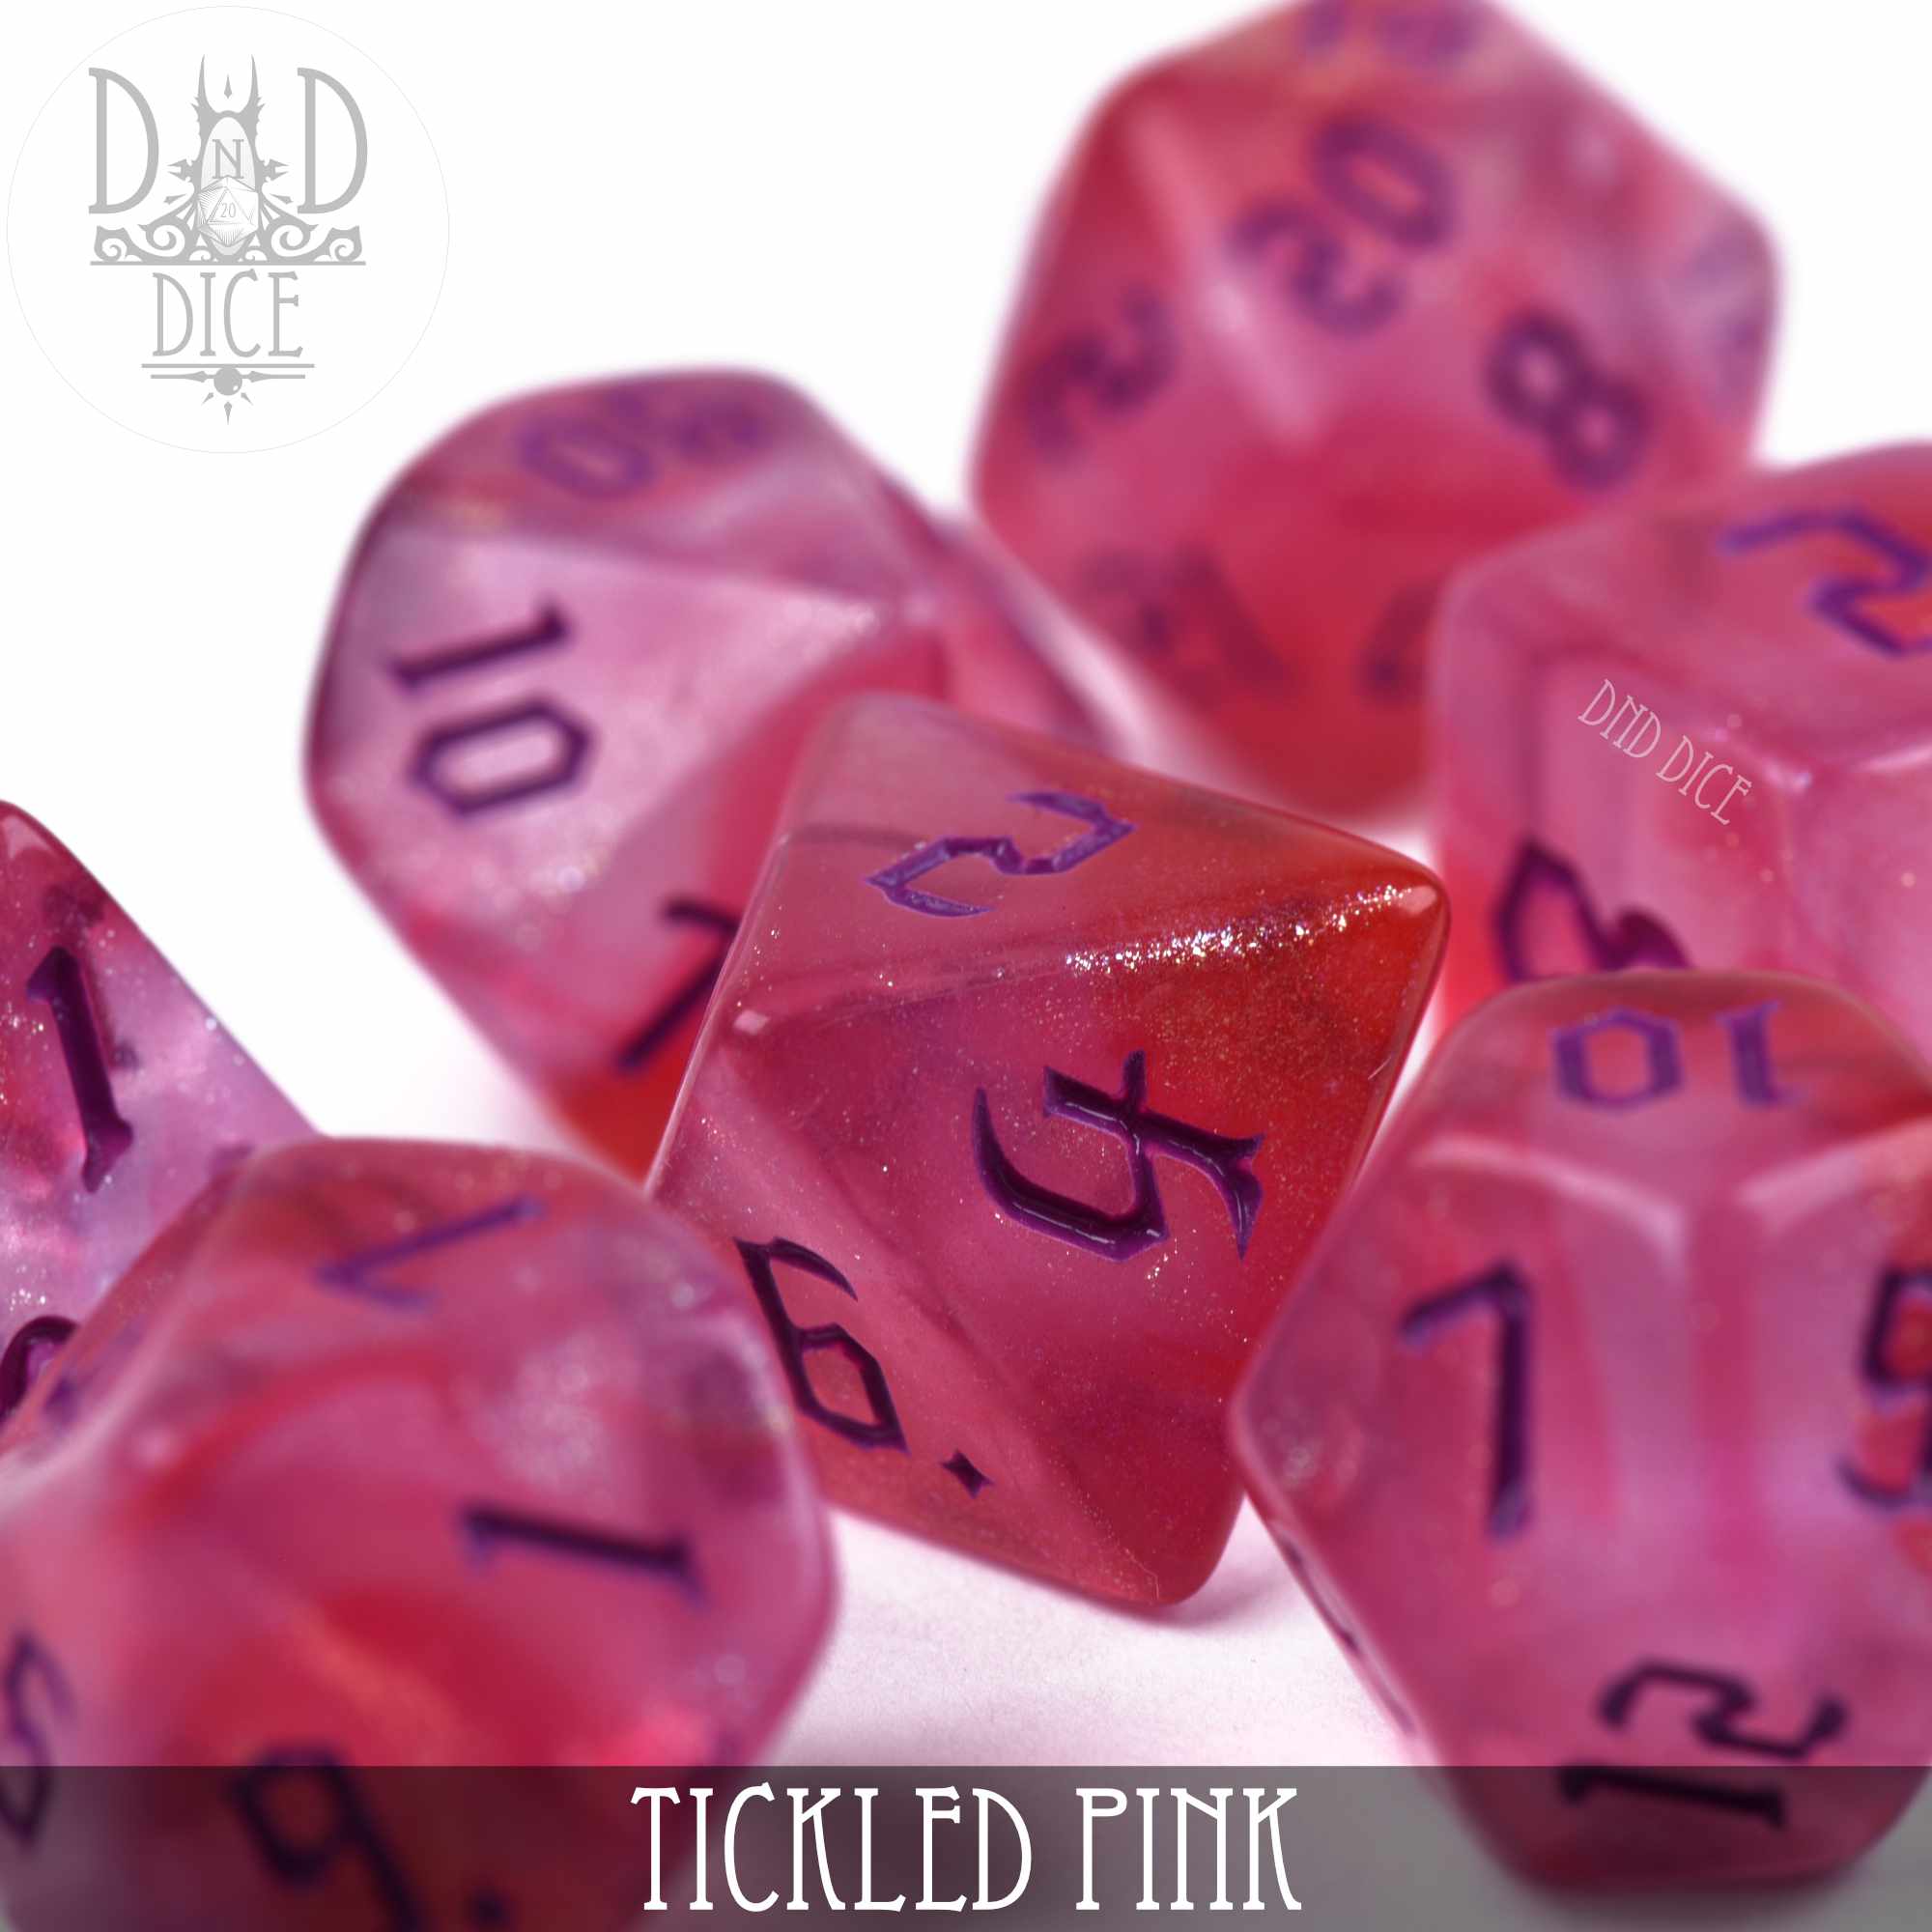 Tickled Pink Dice Set